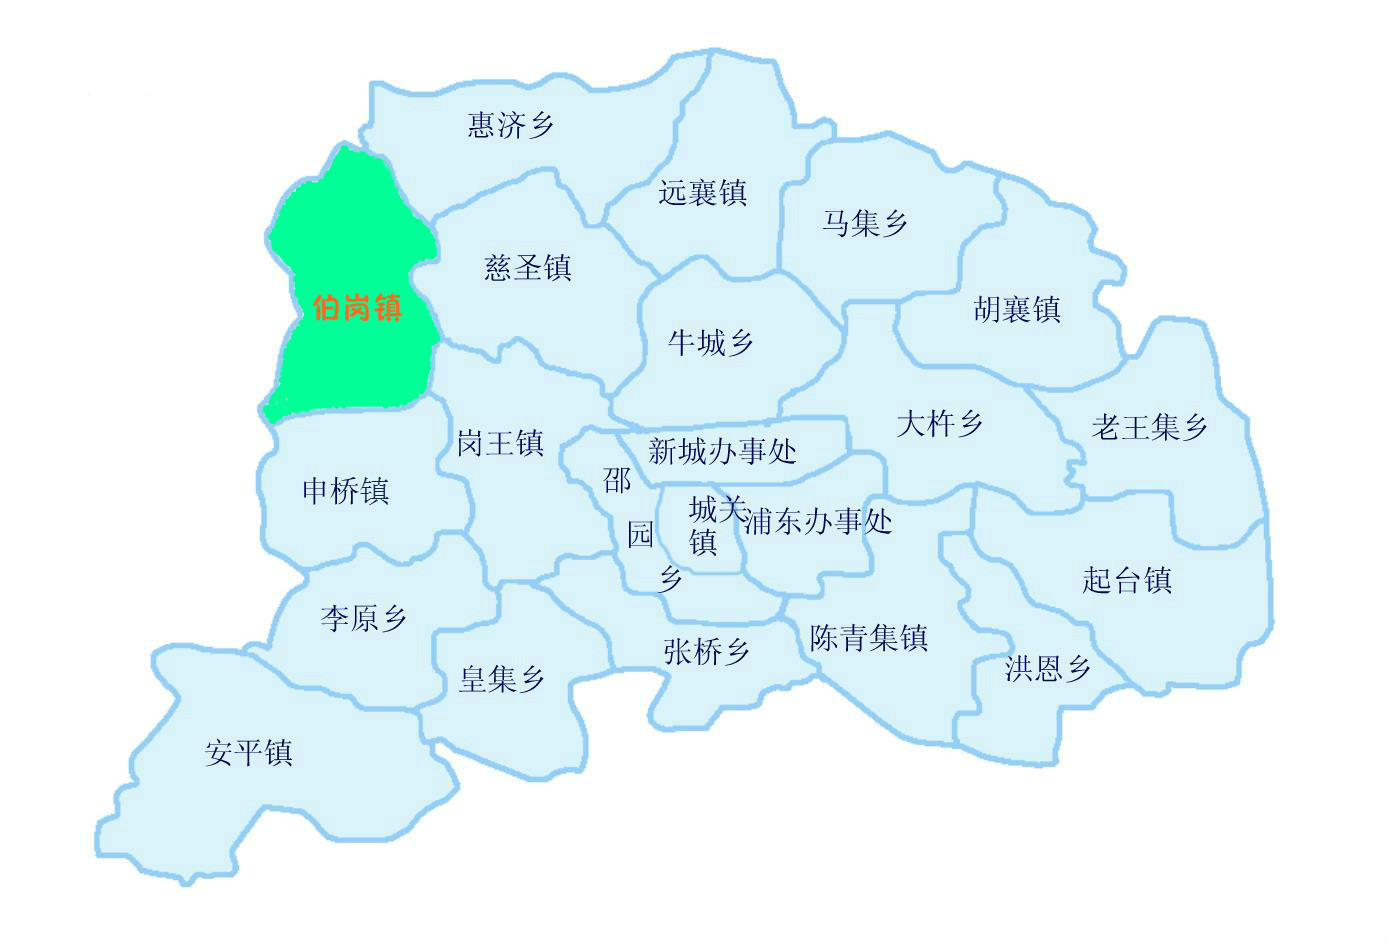 伯崗鎮在柘城縣的地理位置